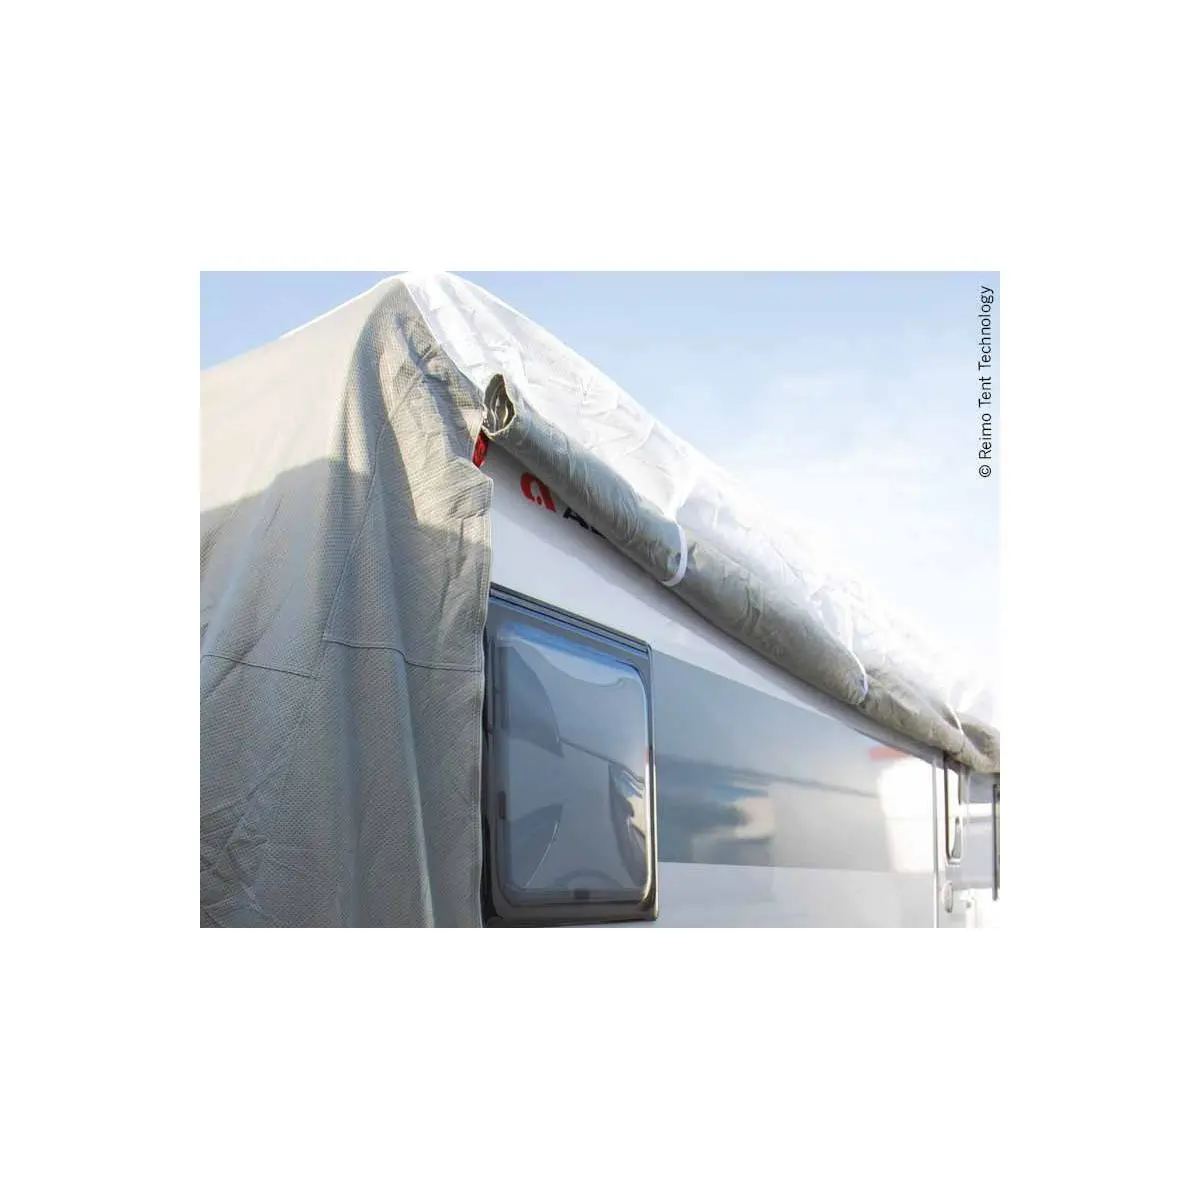 Ochranný kryt na karavan PREMIUM, dĺžka 510-550 cm, pre karavan so šírkou do 250 cm